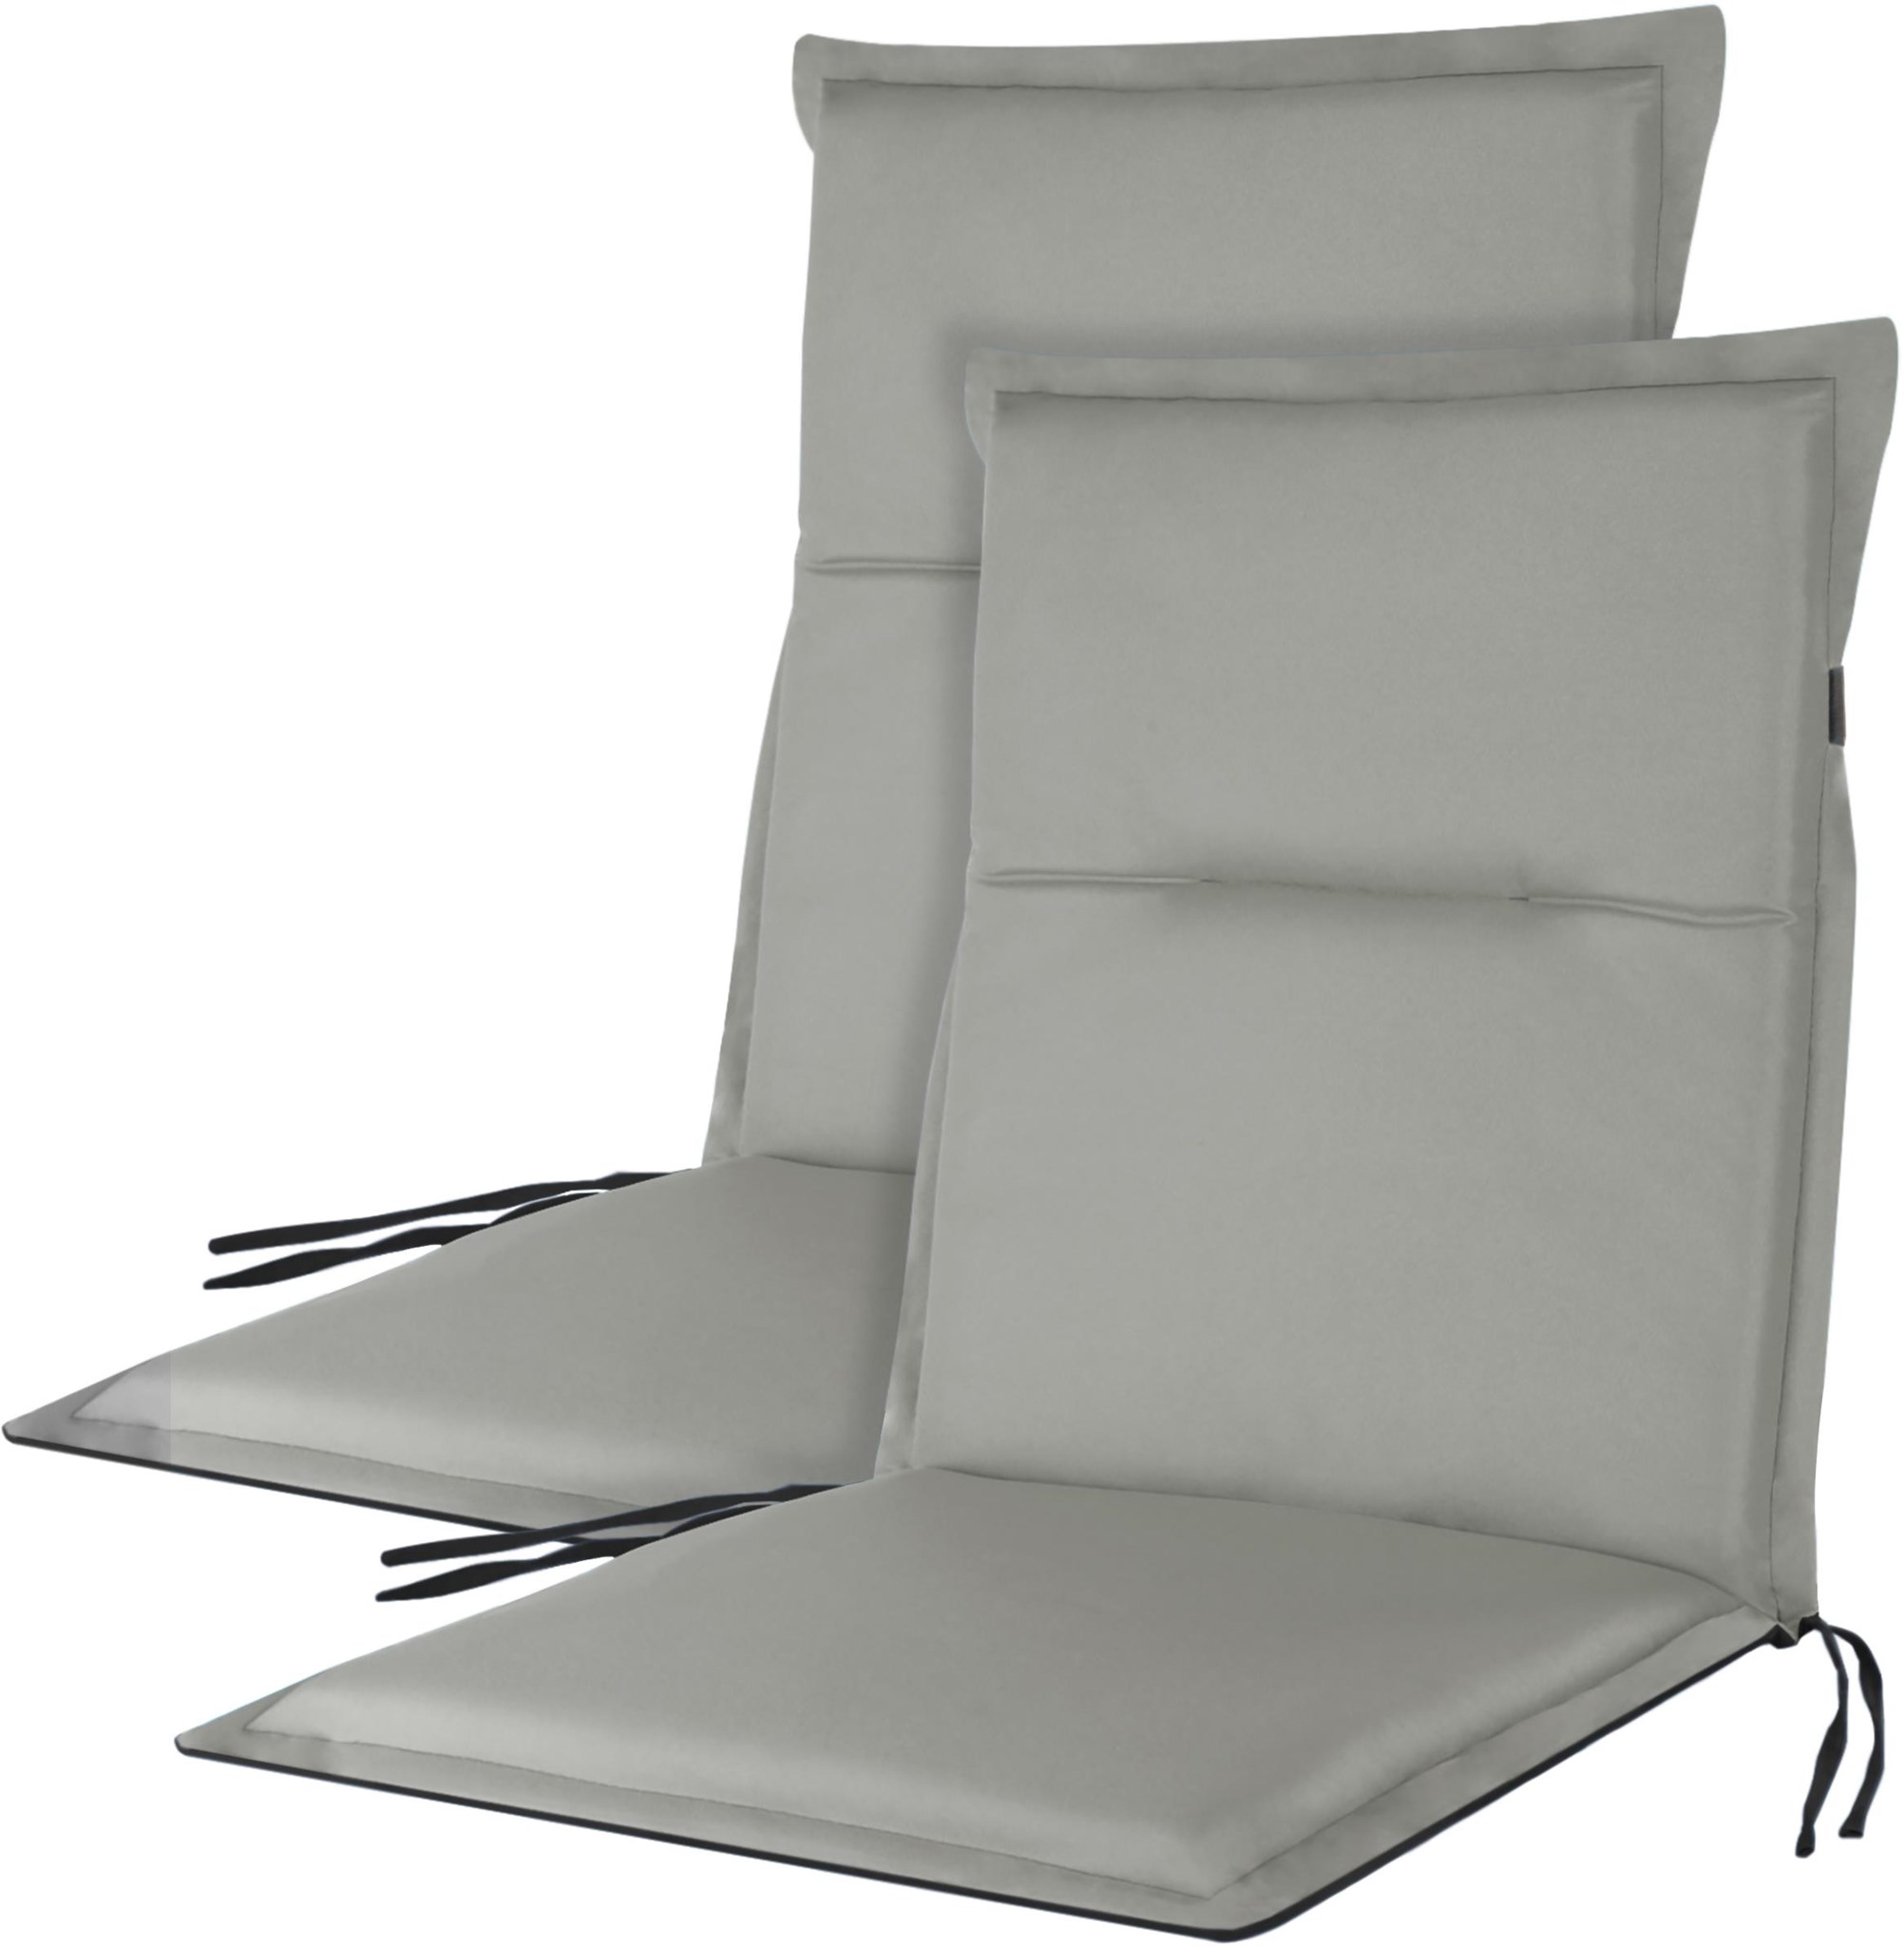 Bild von 2 wendbare Niedriglehner Stuhlauflagen Dunkelgrau/Hellgrau